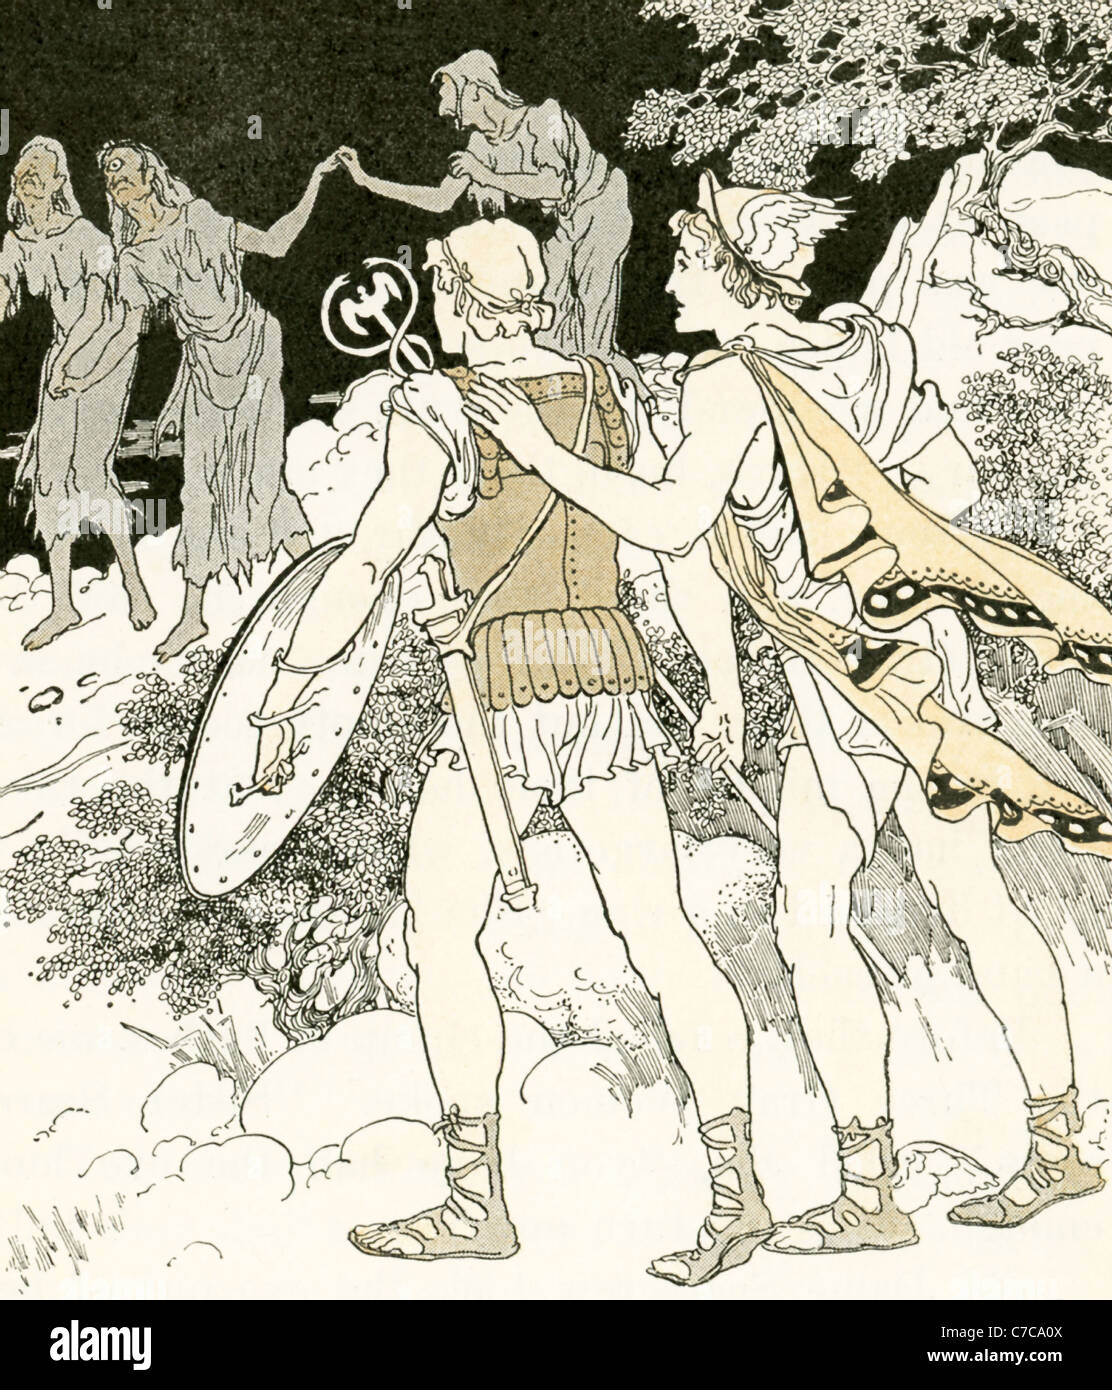 Persée, avec son guide le messager dieu Hermès, vise les trois filles de Porcus et Ceto qui partagent une dent et un œil. Banque D'Images